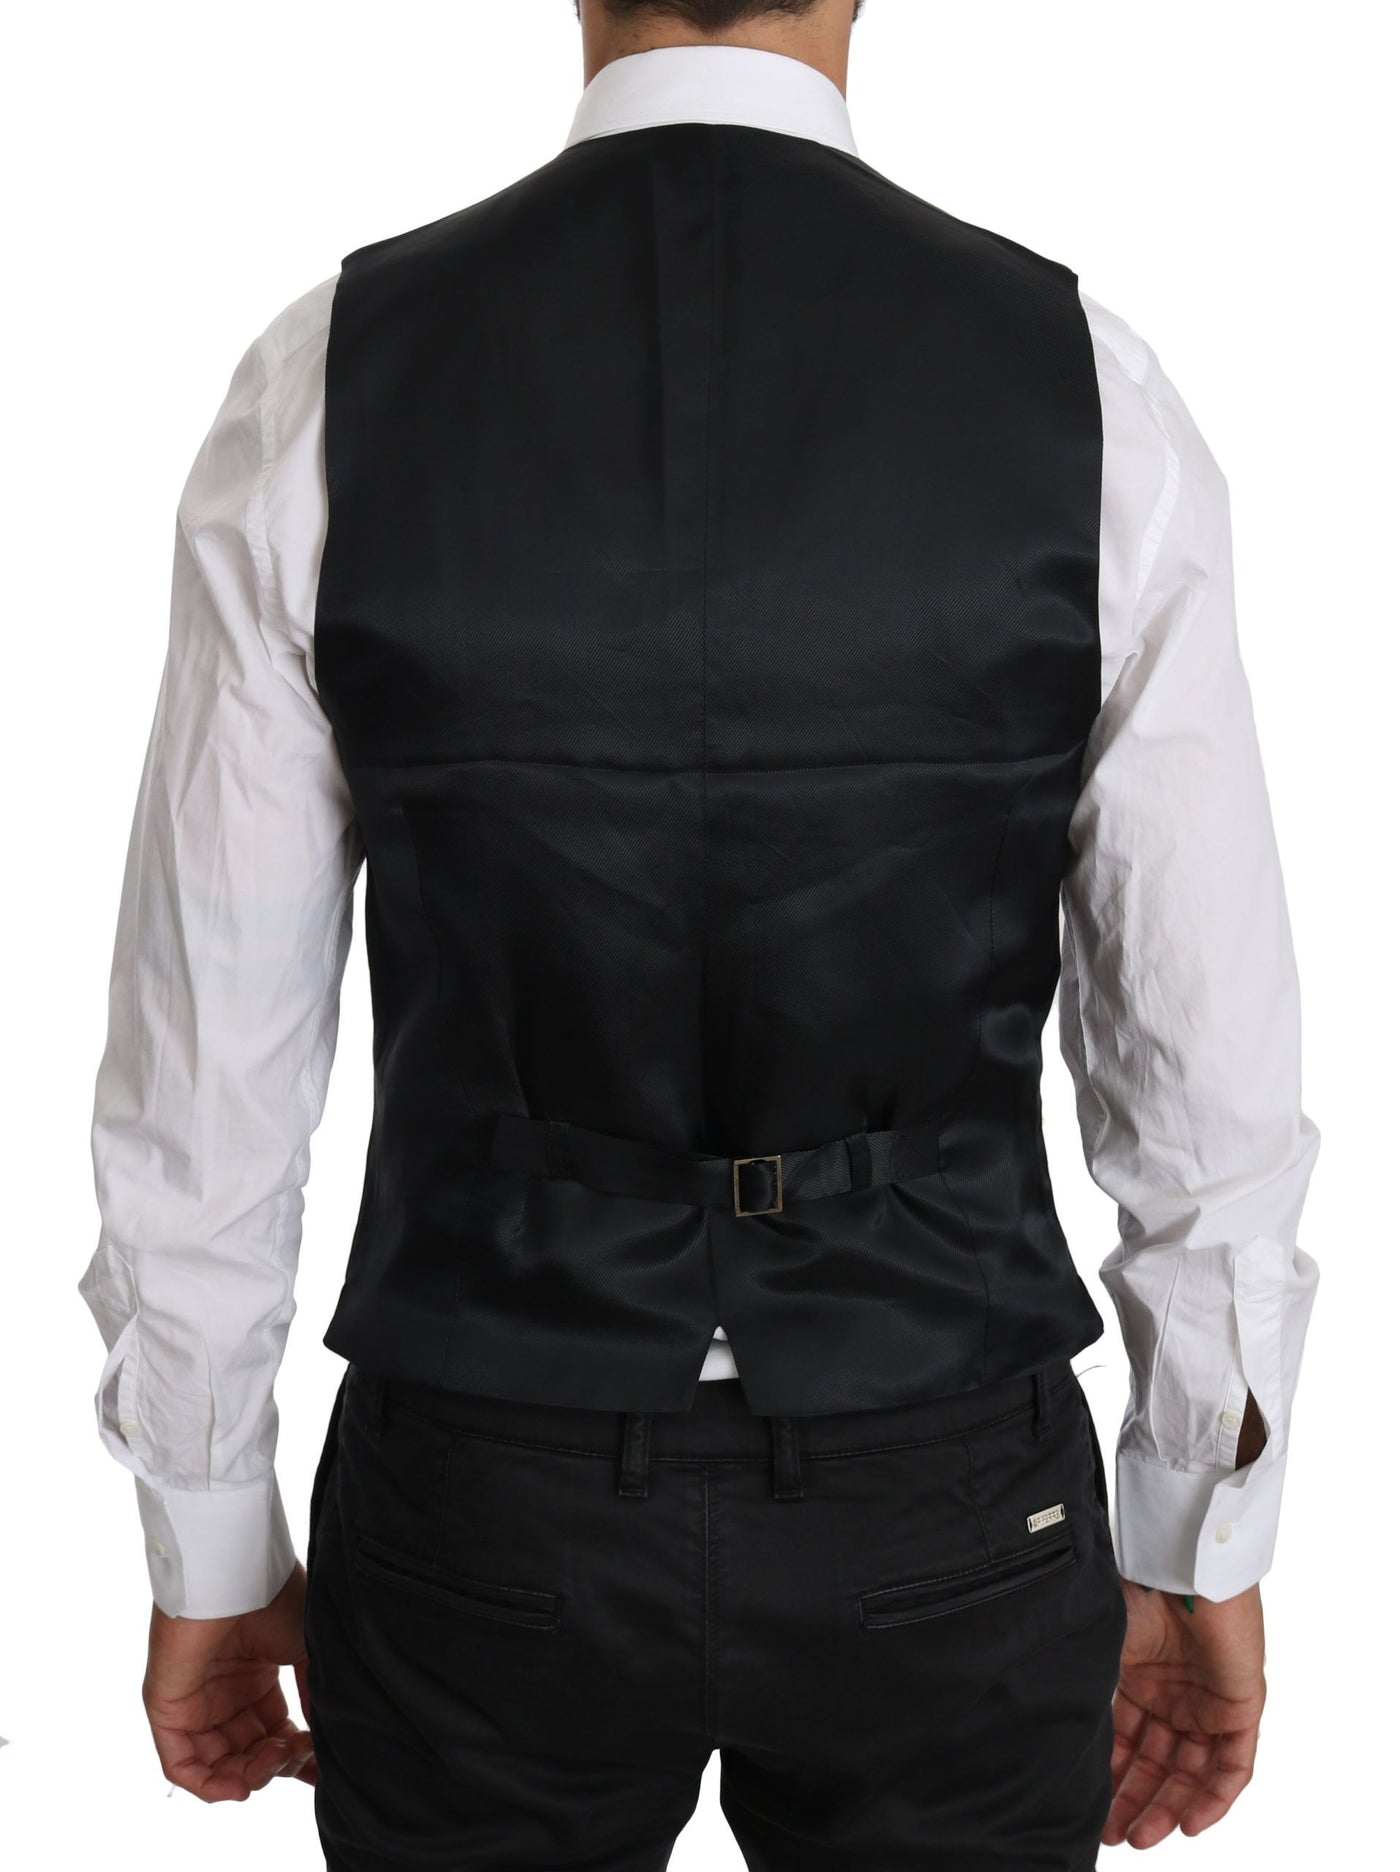 Dolce & Gabbana Blue Wool Waistcoat Formal Gilet Vest